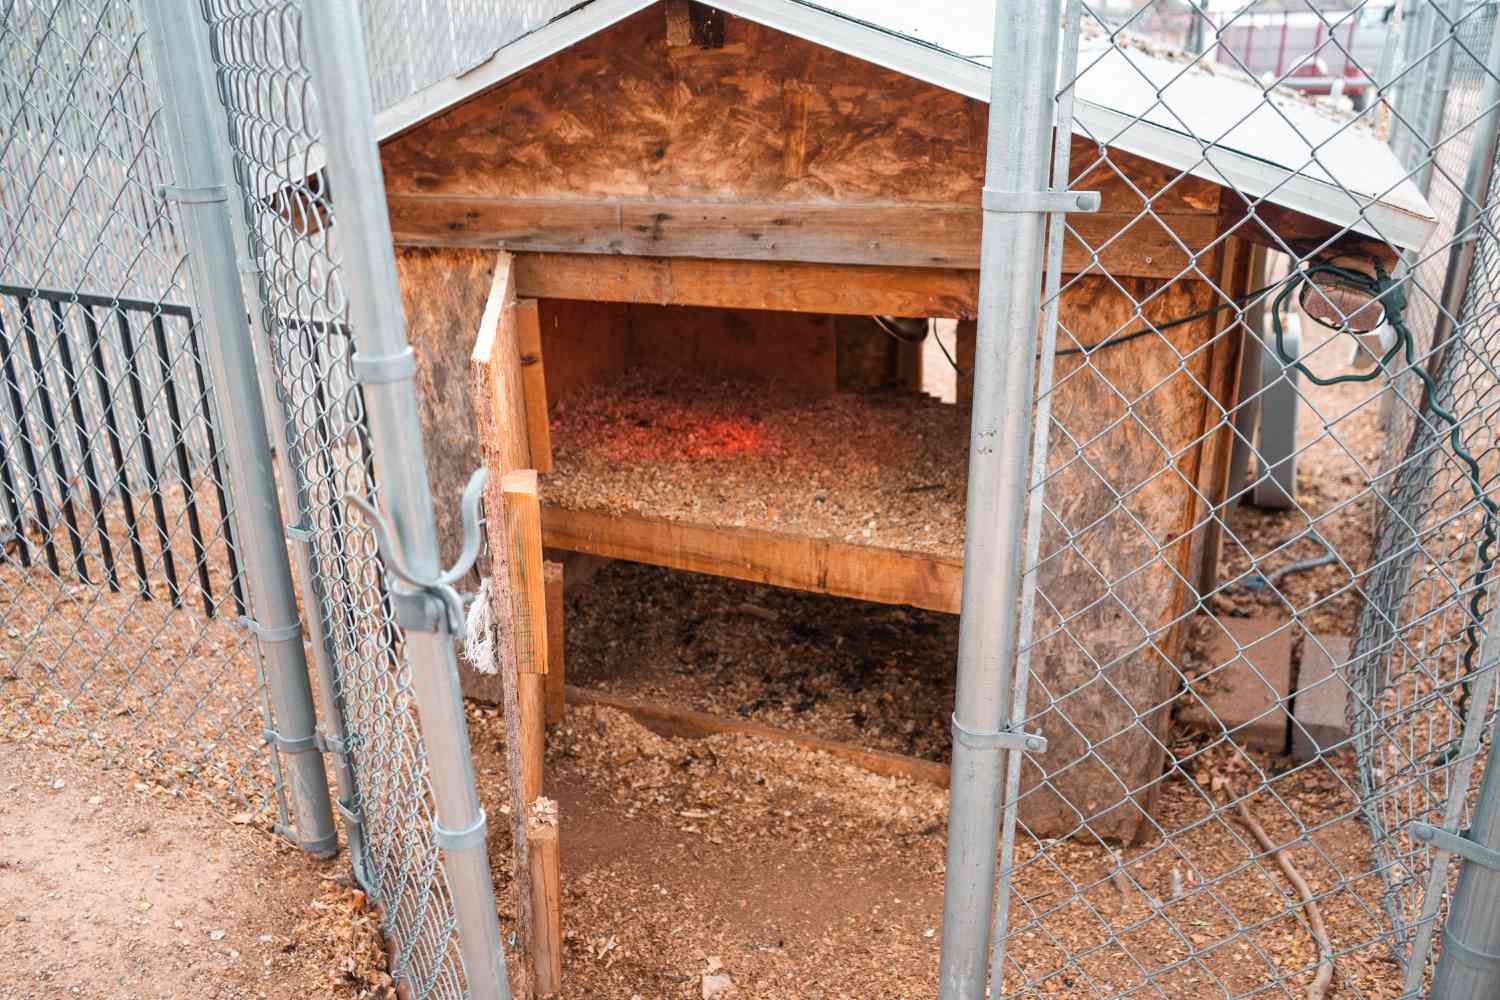 Umzäuntes Tor und geöffnete Hühnerstalltür zeigen zwei feste Böden im Stall